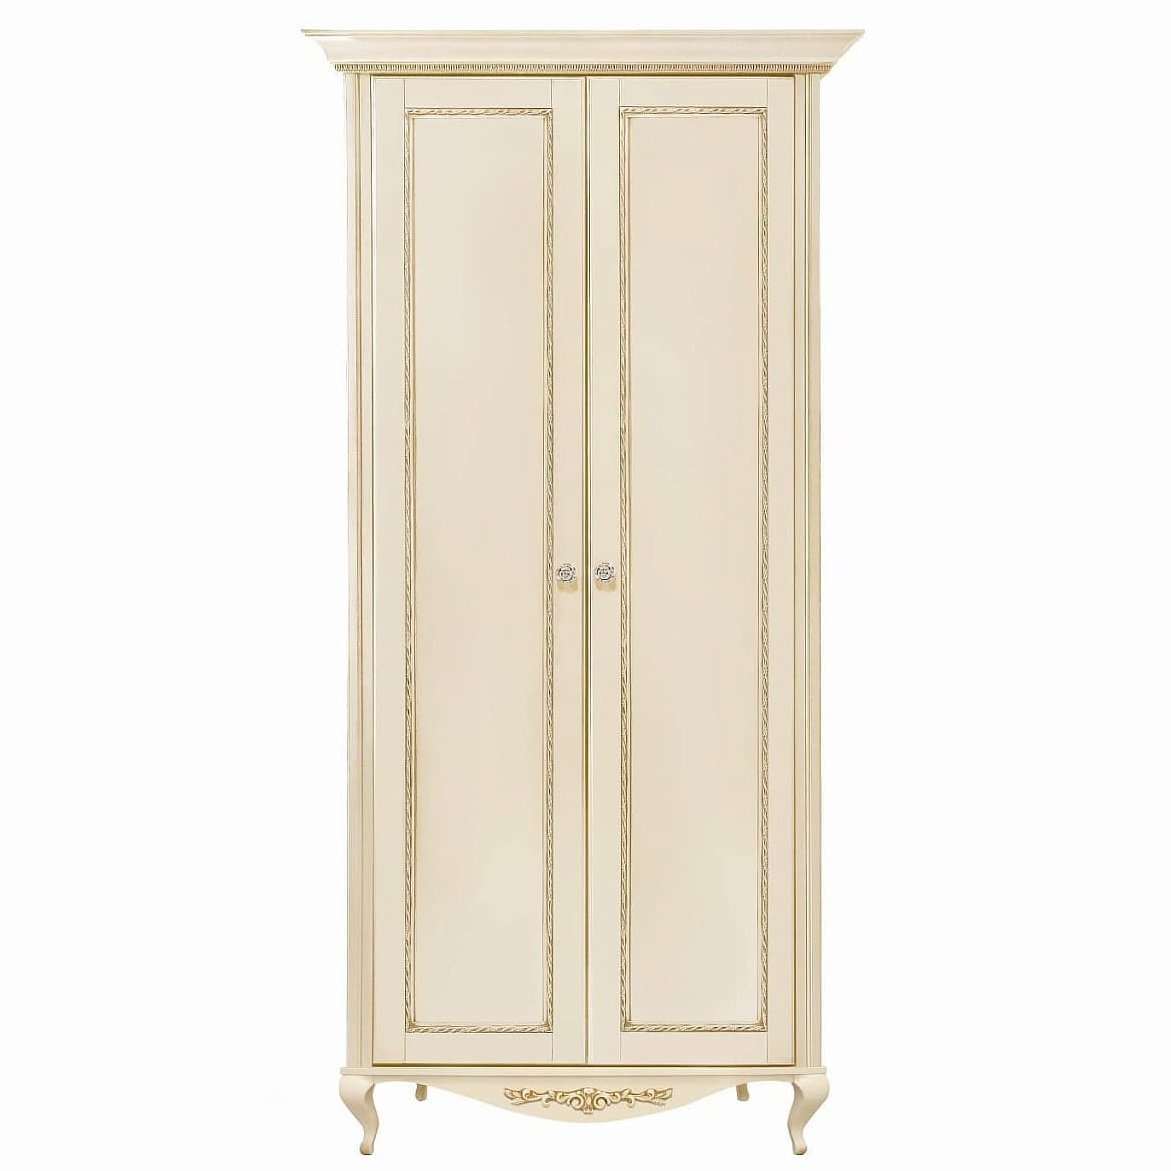 Шкаф платяной Timber Неаполь, 2-х дверный 114x65x227 см цвет: ваниль с золотом (T-522)T-522